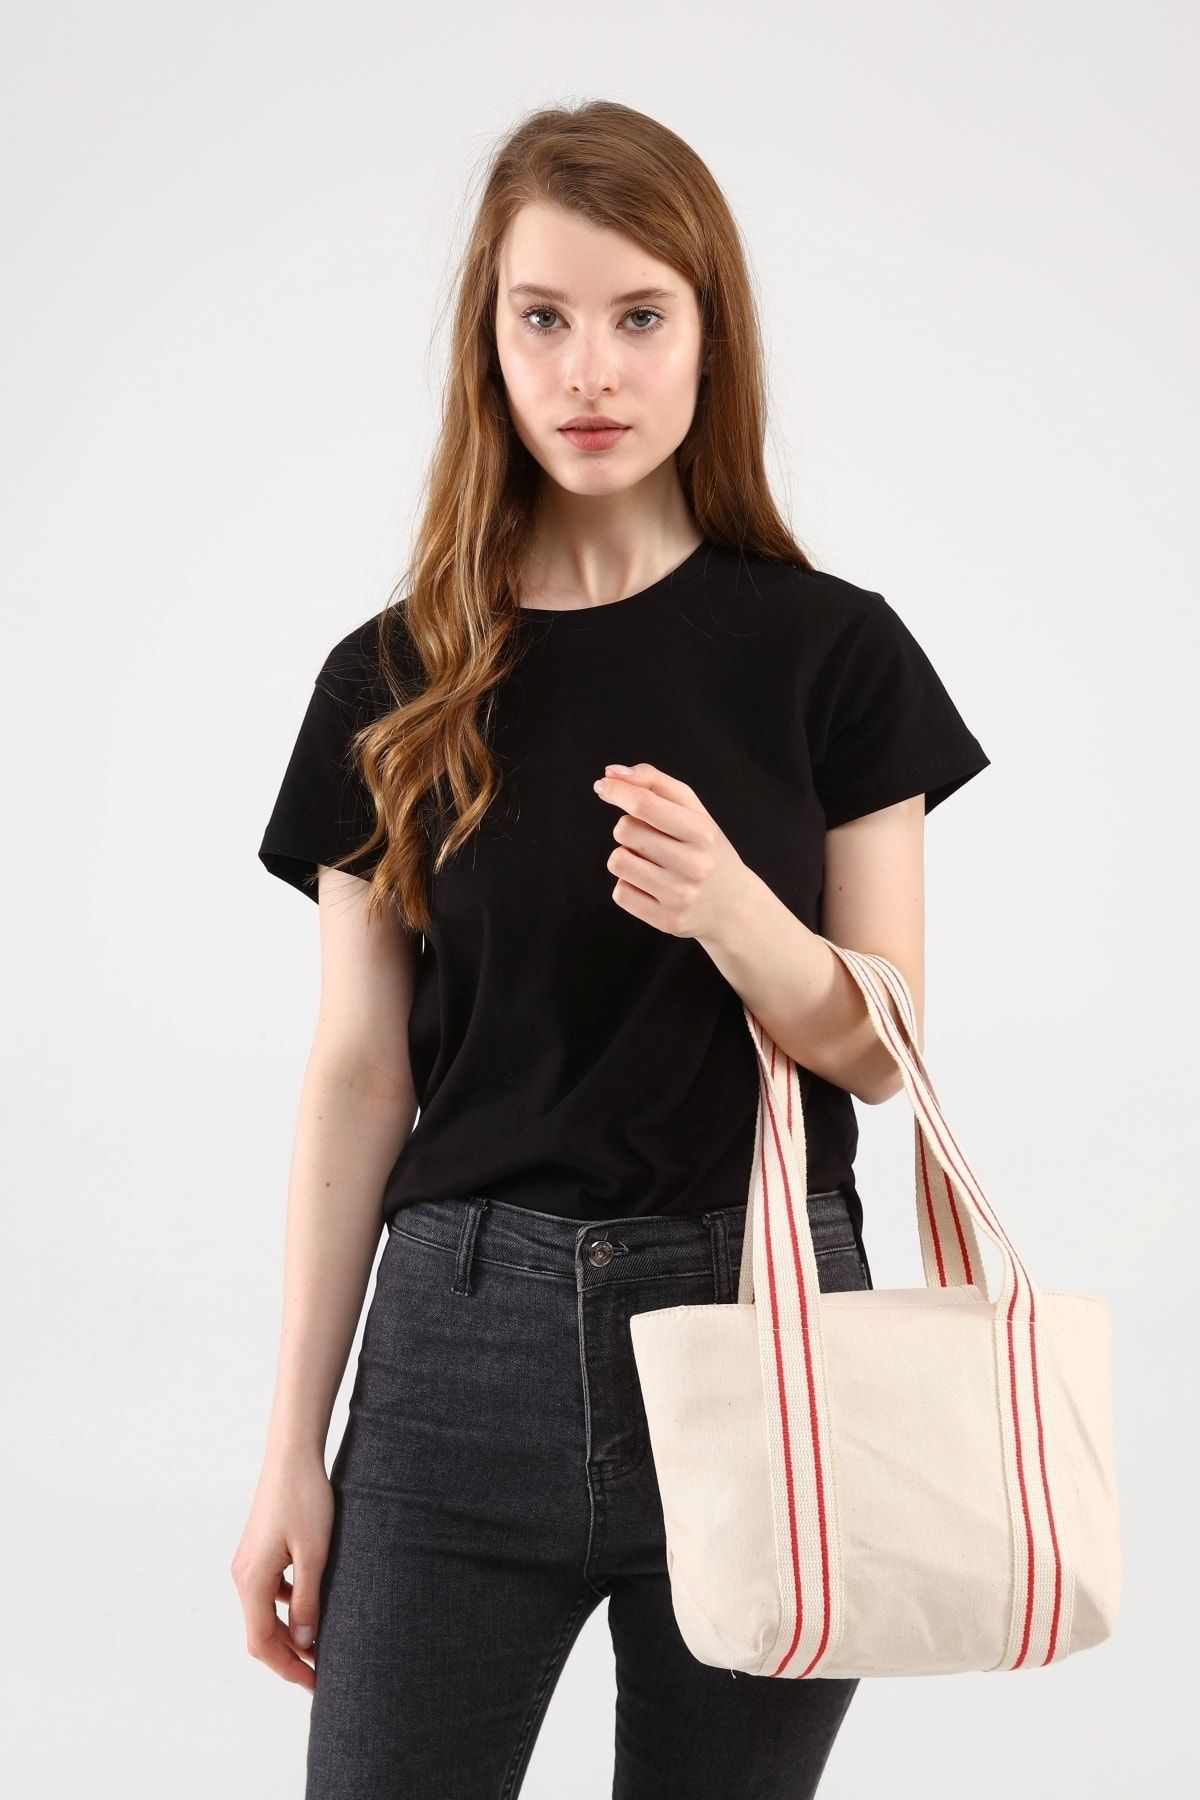 ICONE BAG Bej Renk Kadın Çantası, Kadın Dokuma Kanvas El Ve Omuz Çantası, Çanta Modelleri